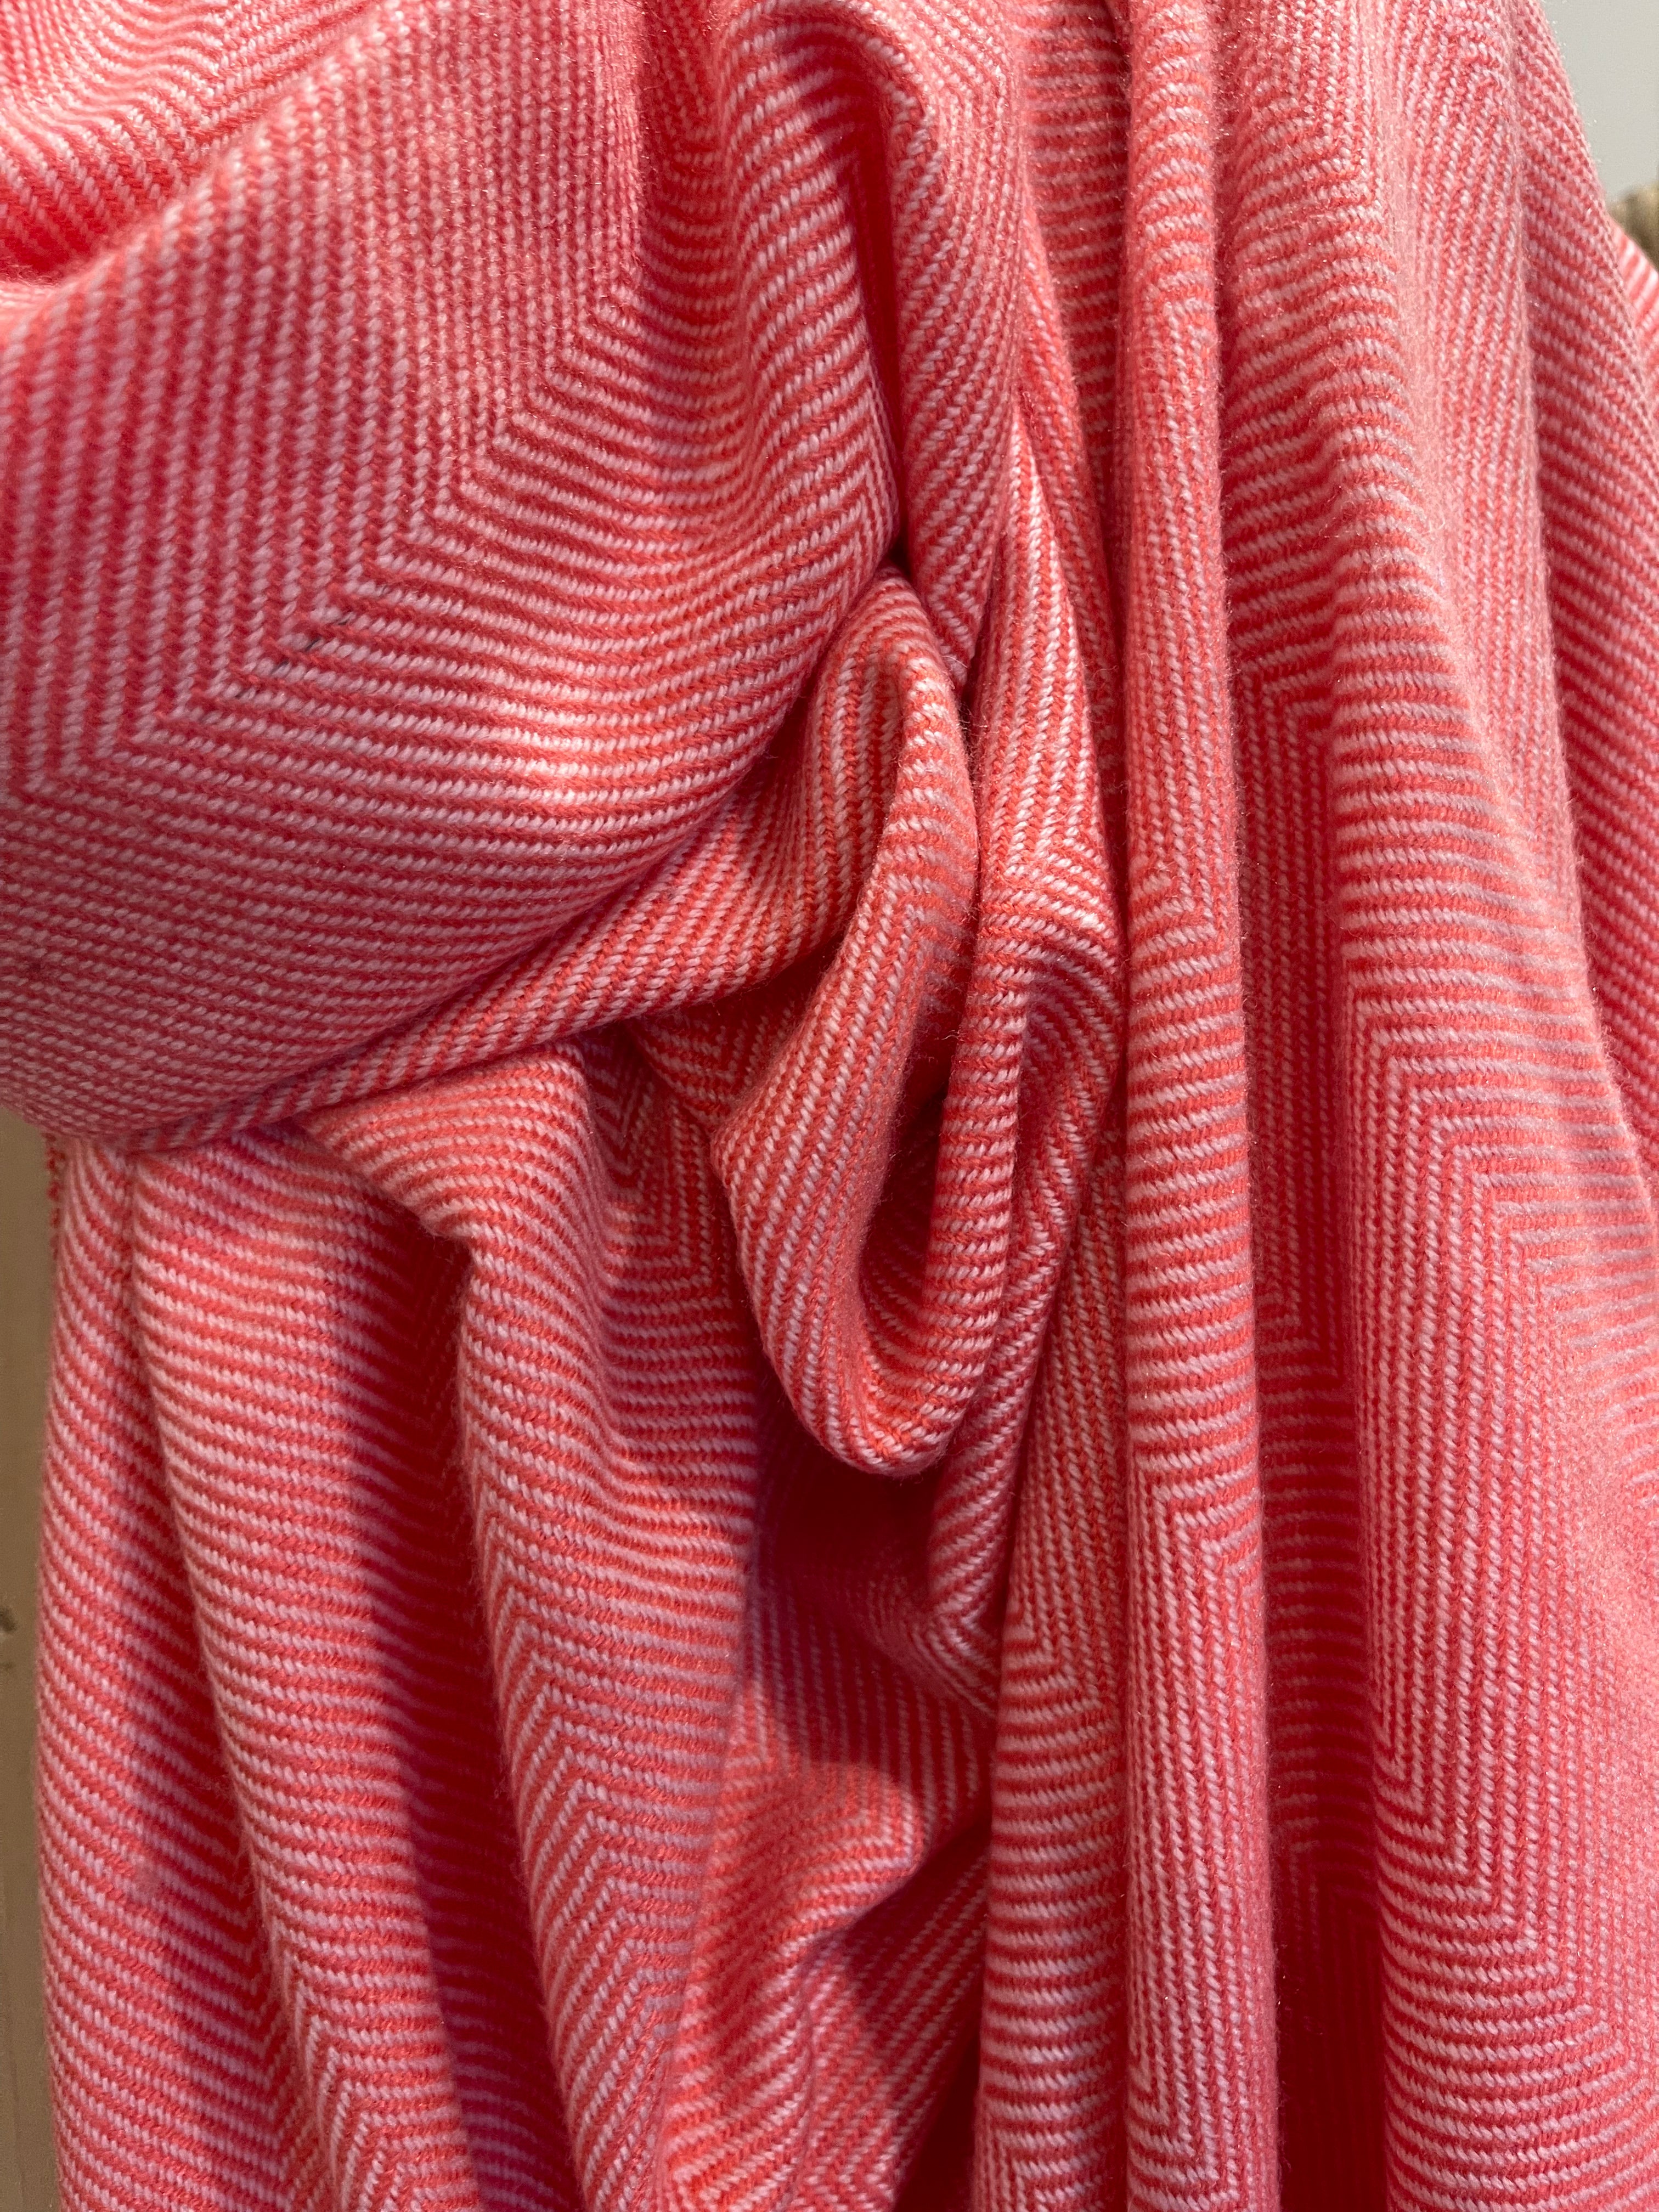 Cashmere Wrap - Coral Stripe